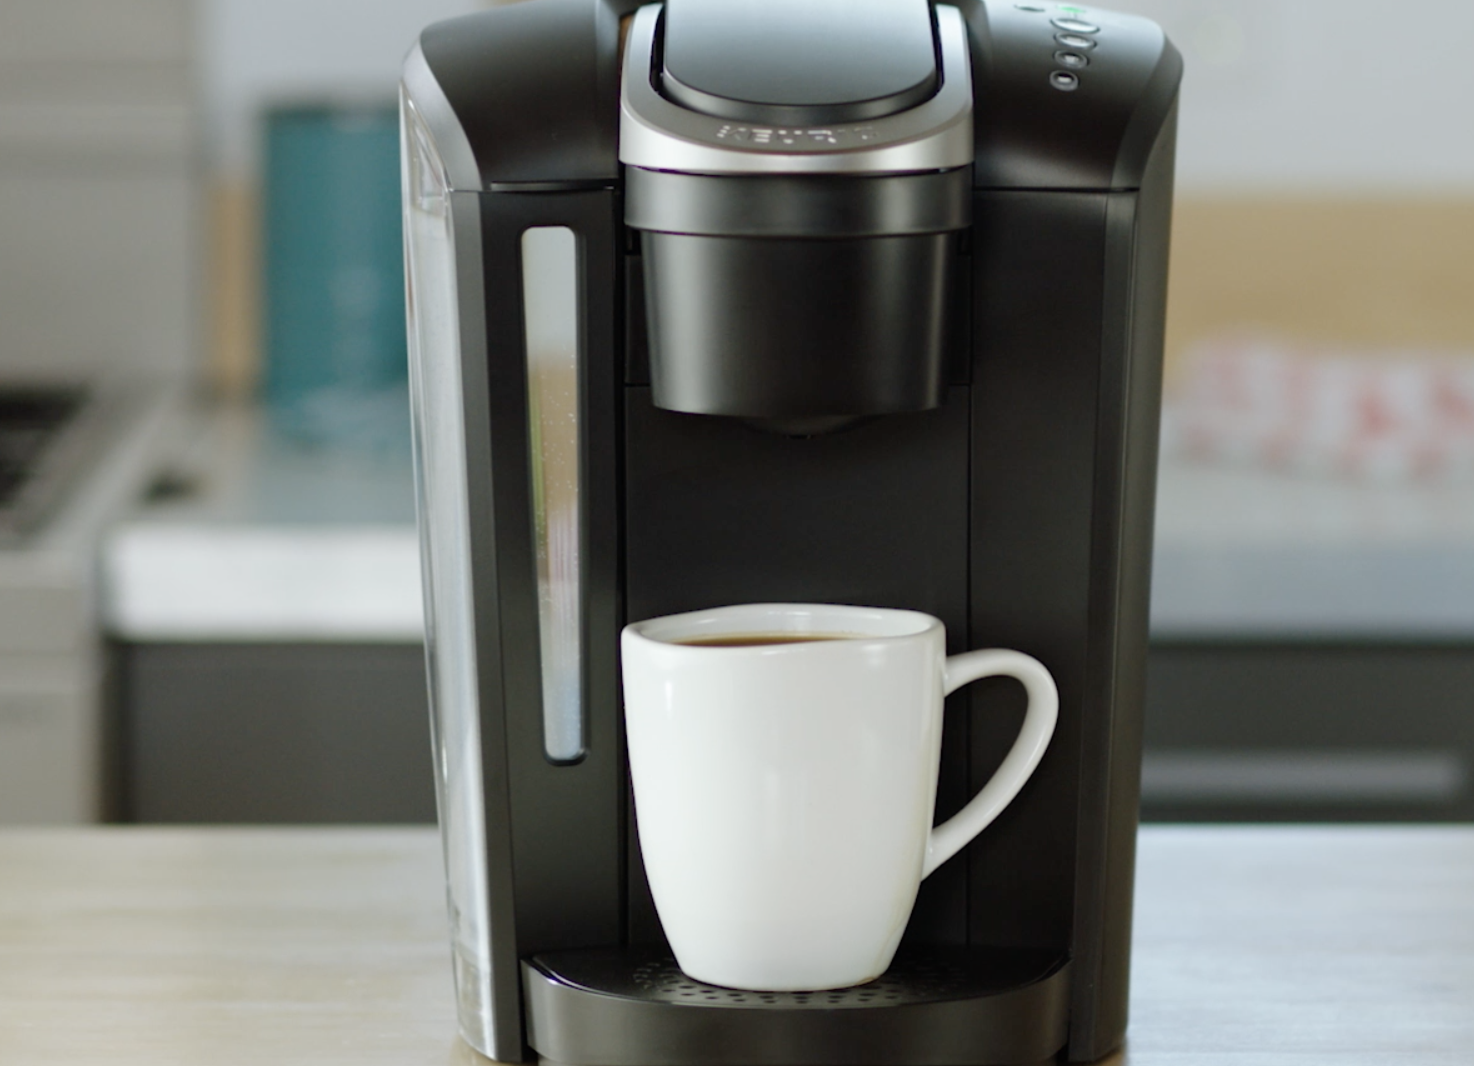 keurig machine brewing coffee